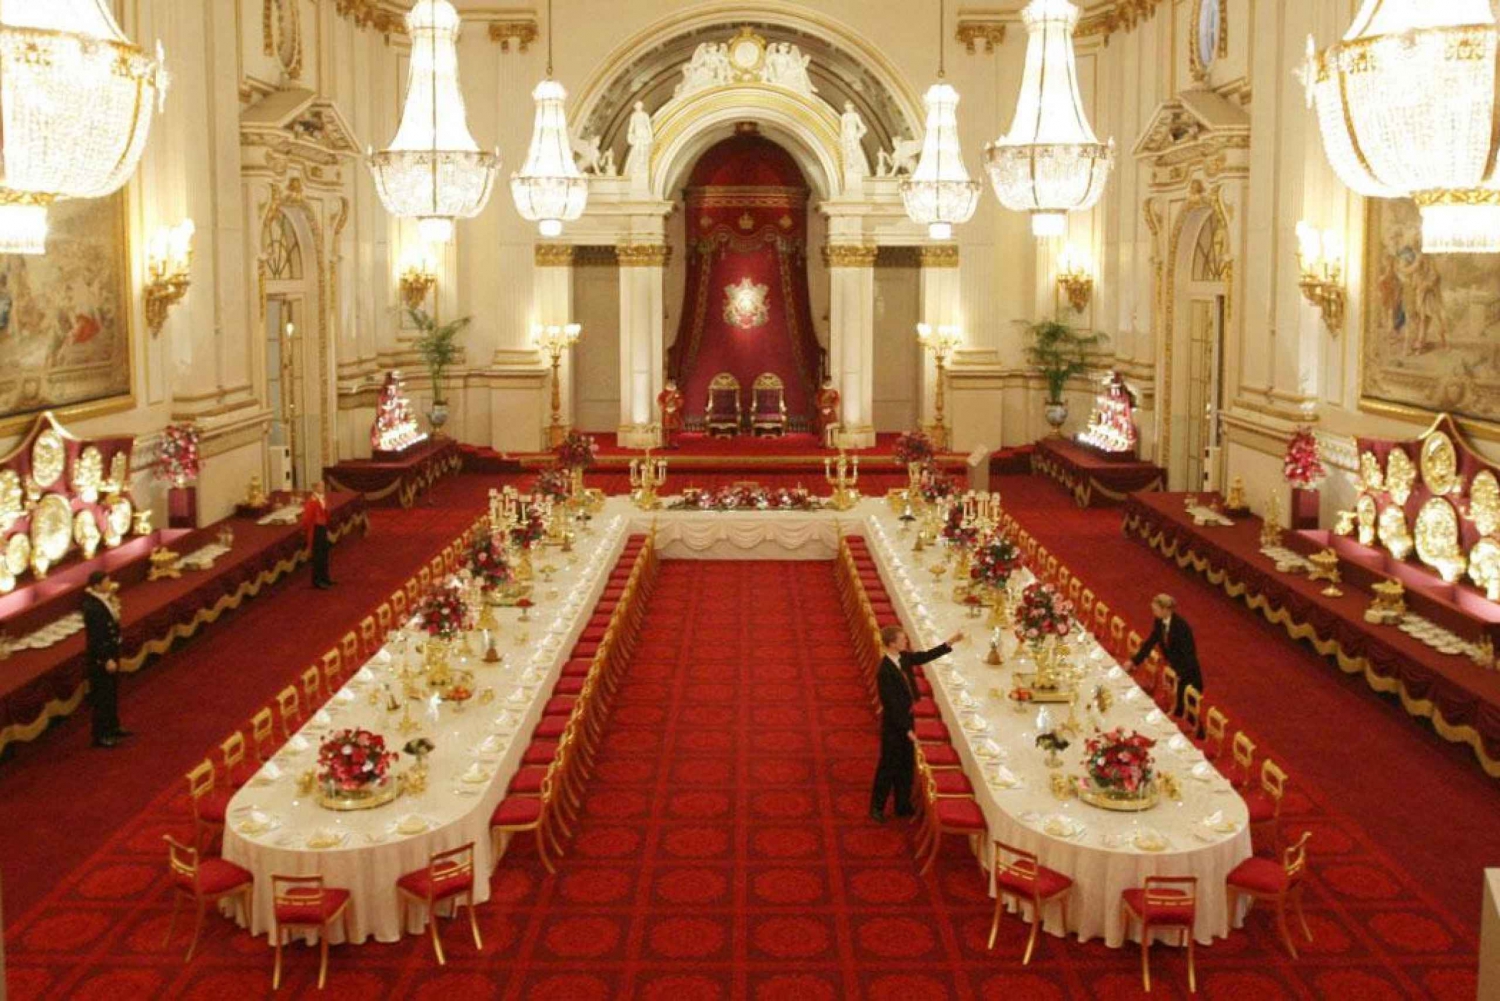 London: Fuld royal rundvisning og adgangsbillet til Buckingham Palace